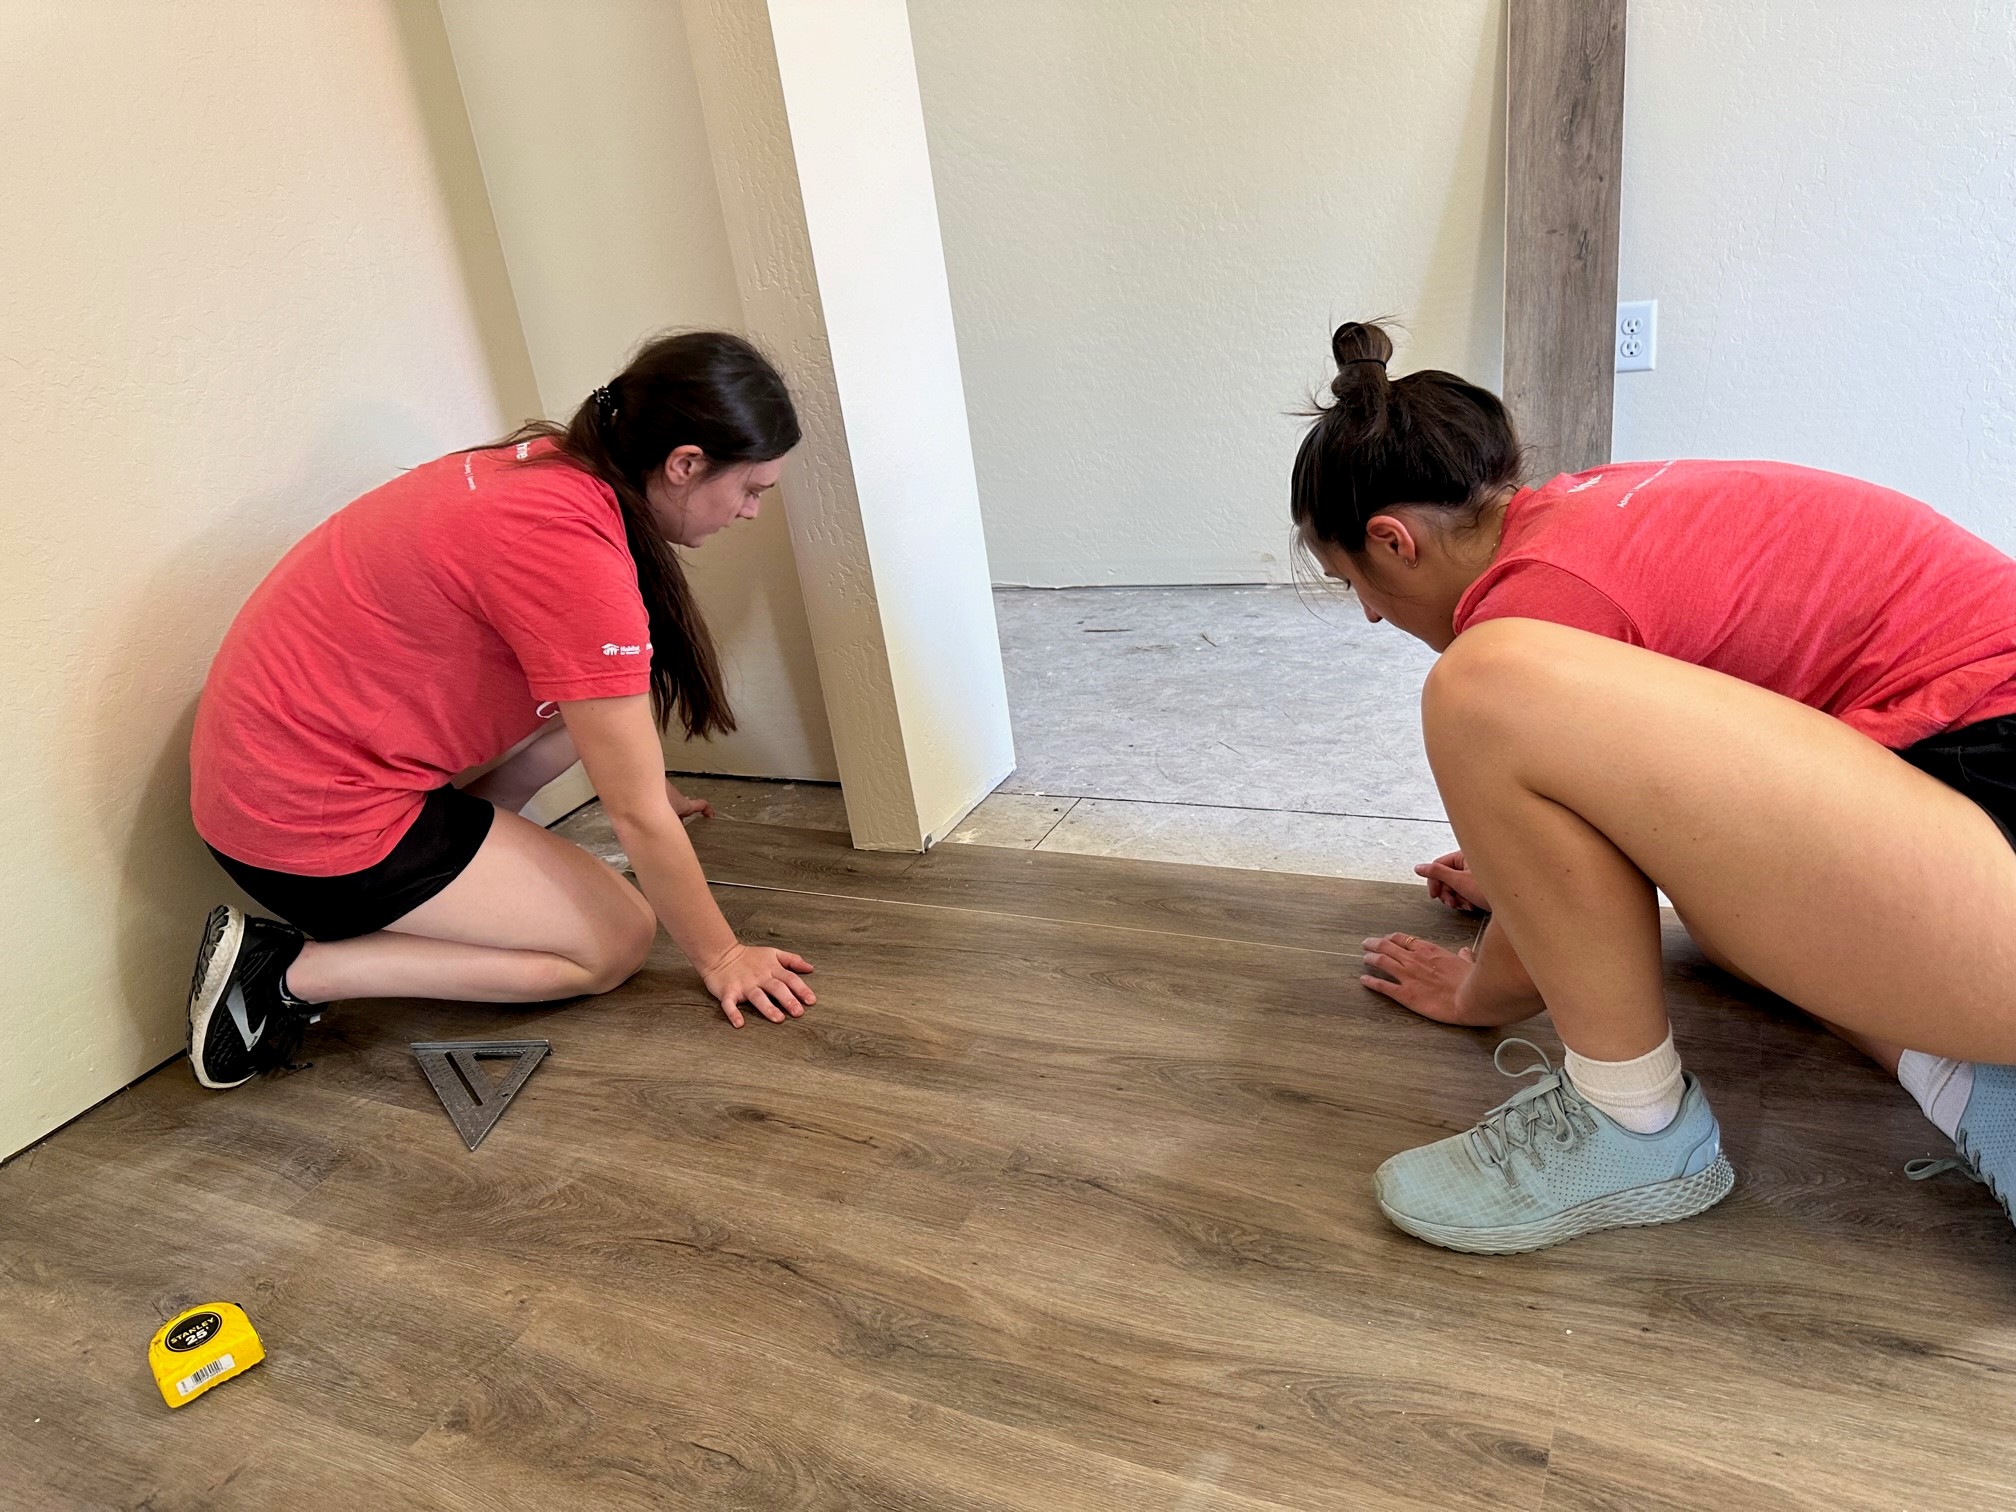 Women working on a floor